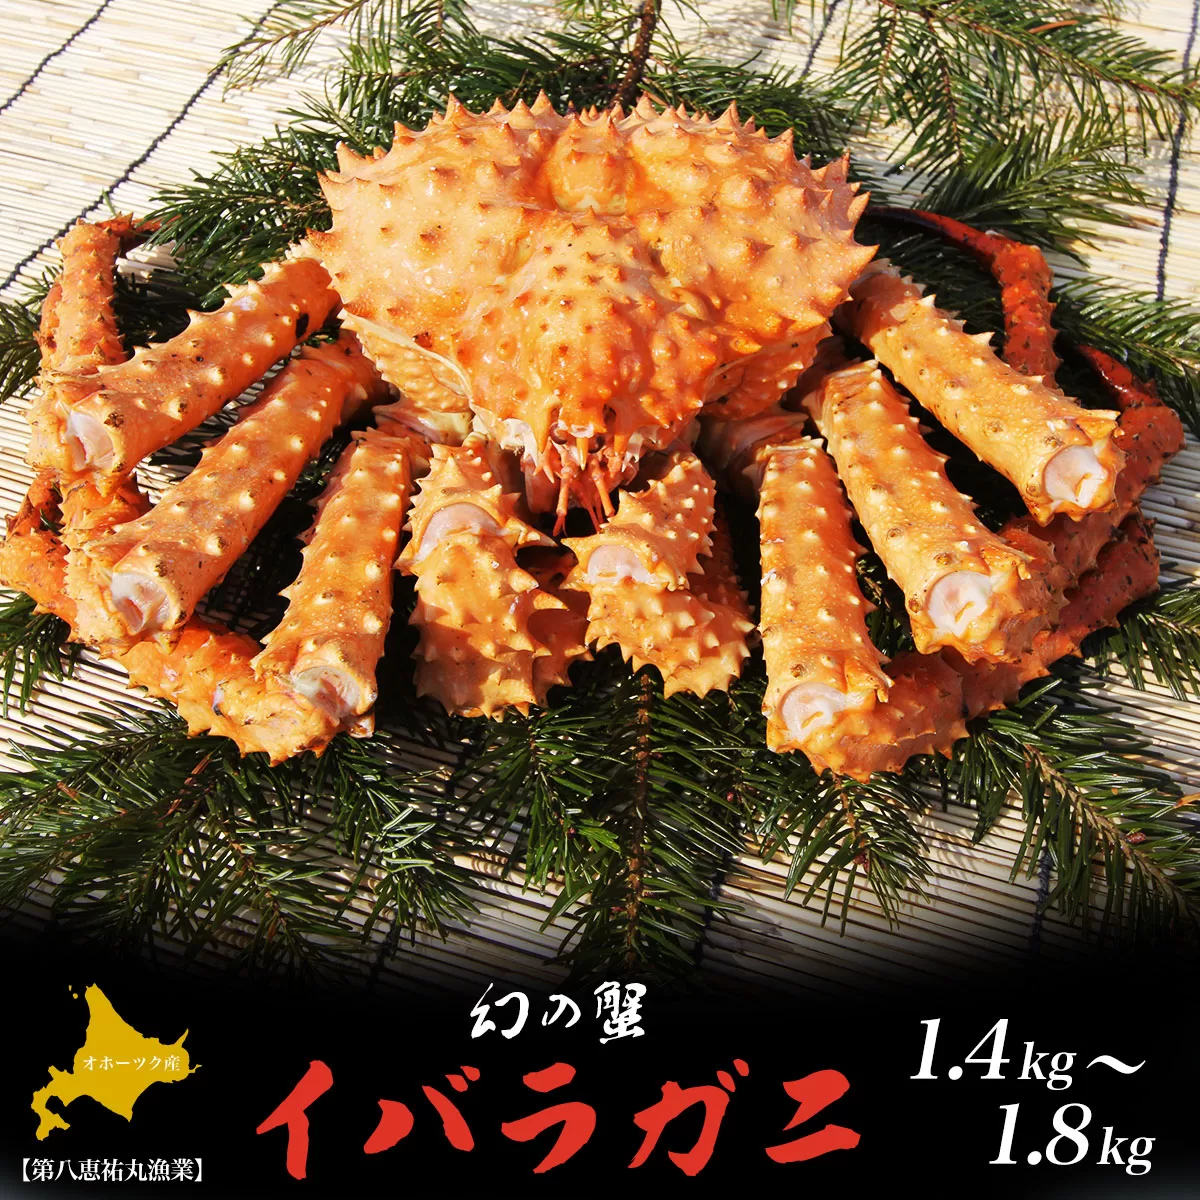 オホーツク産 幻の蟹 イバラガニ 1.4〜1.8kg SRMN010